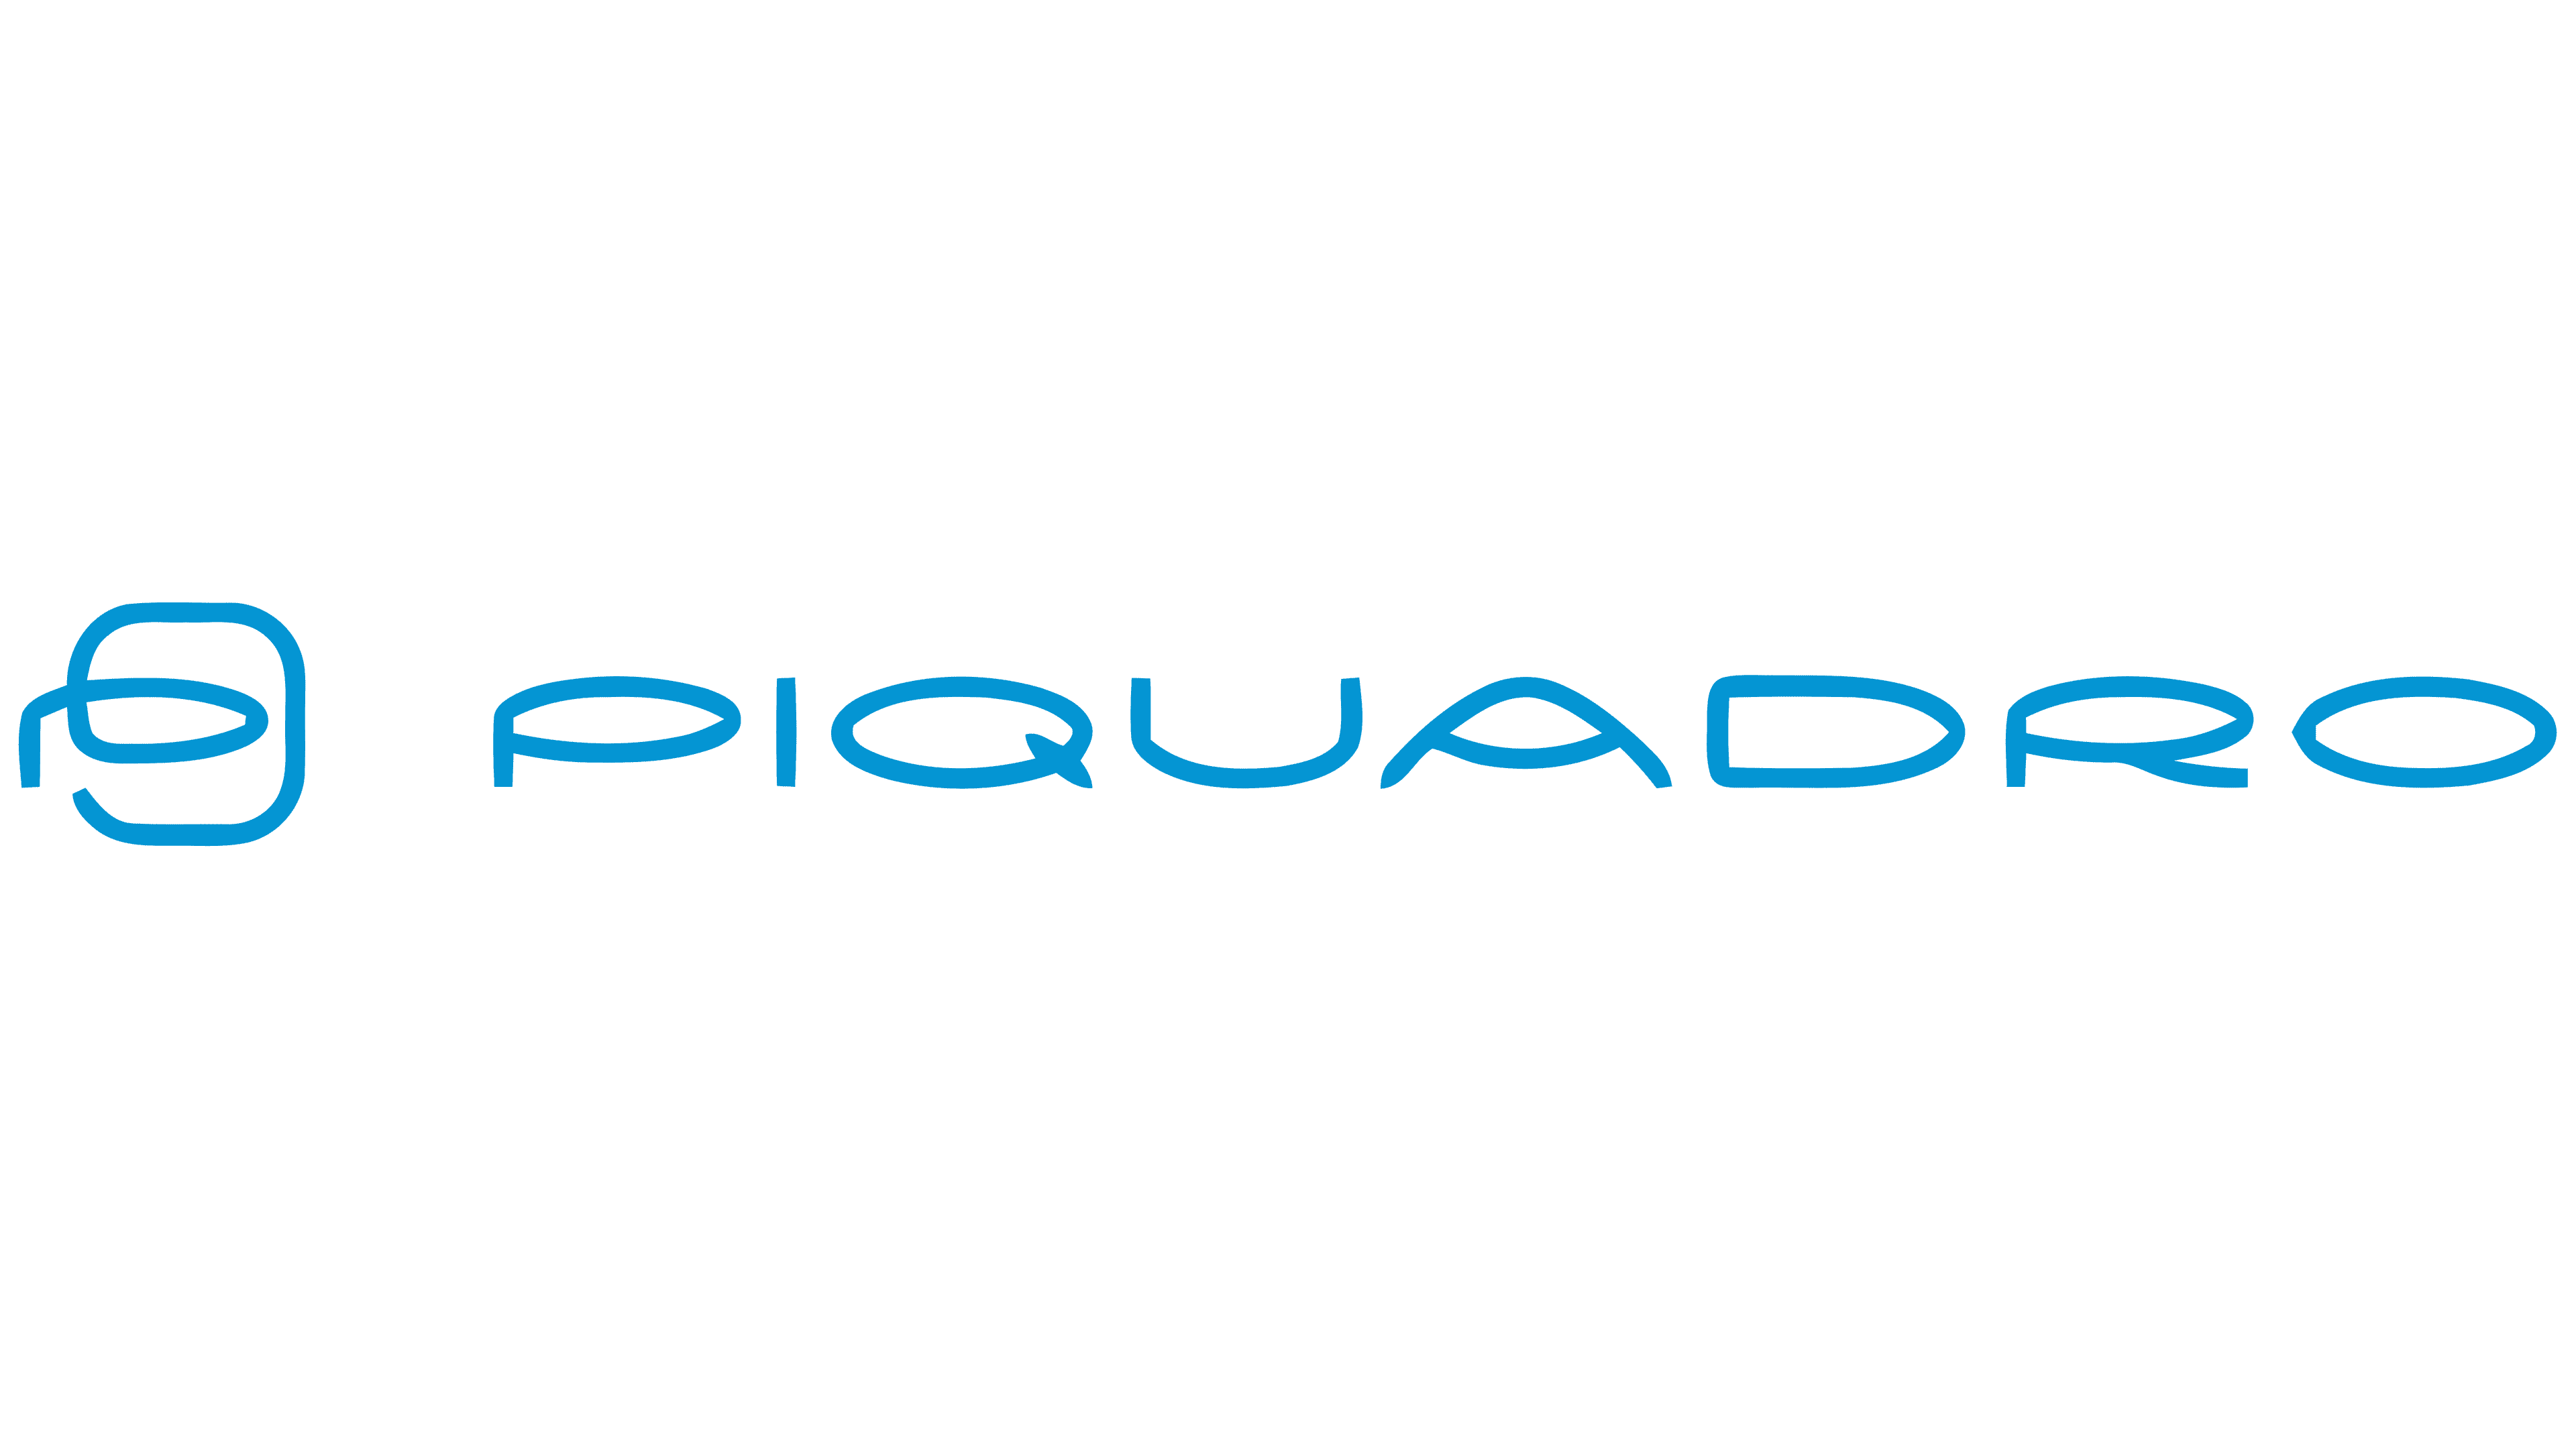 Piquadro Logo